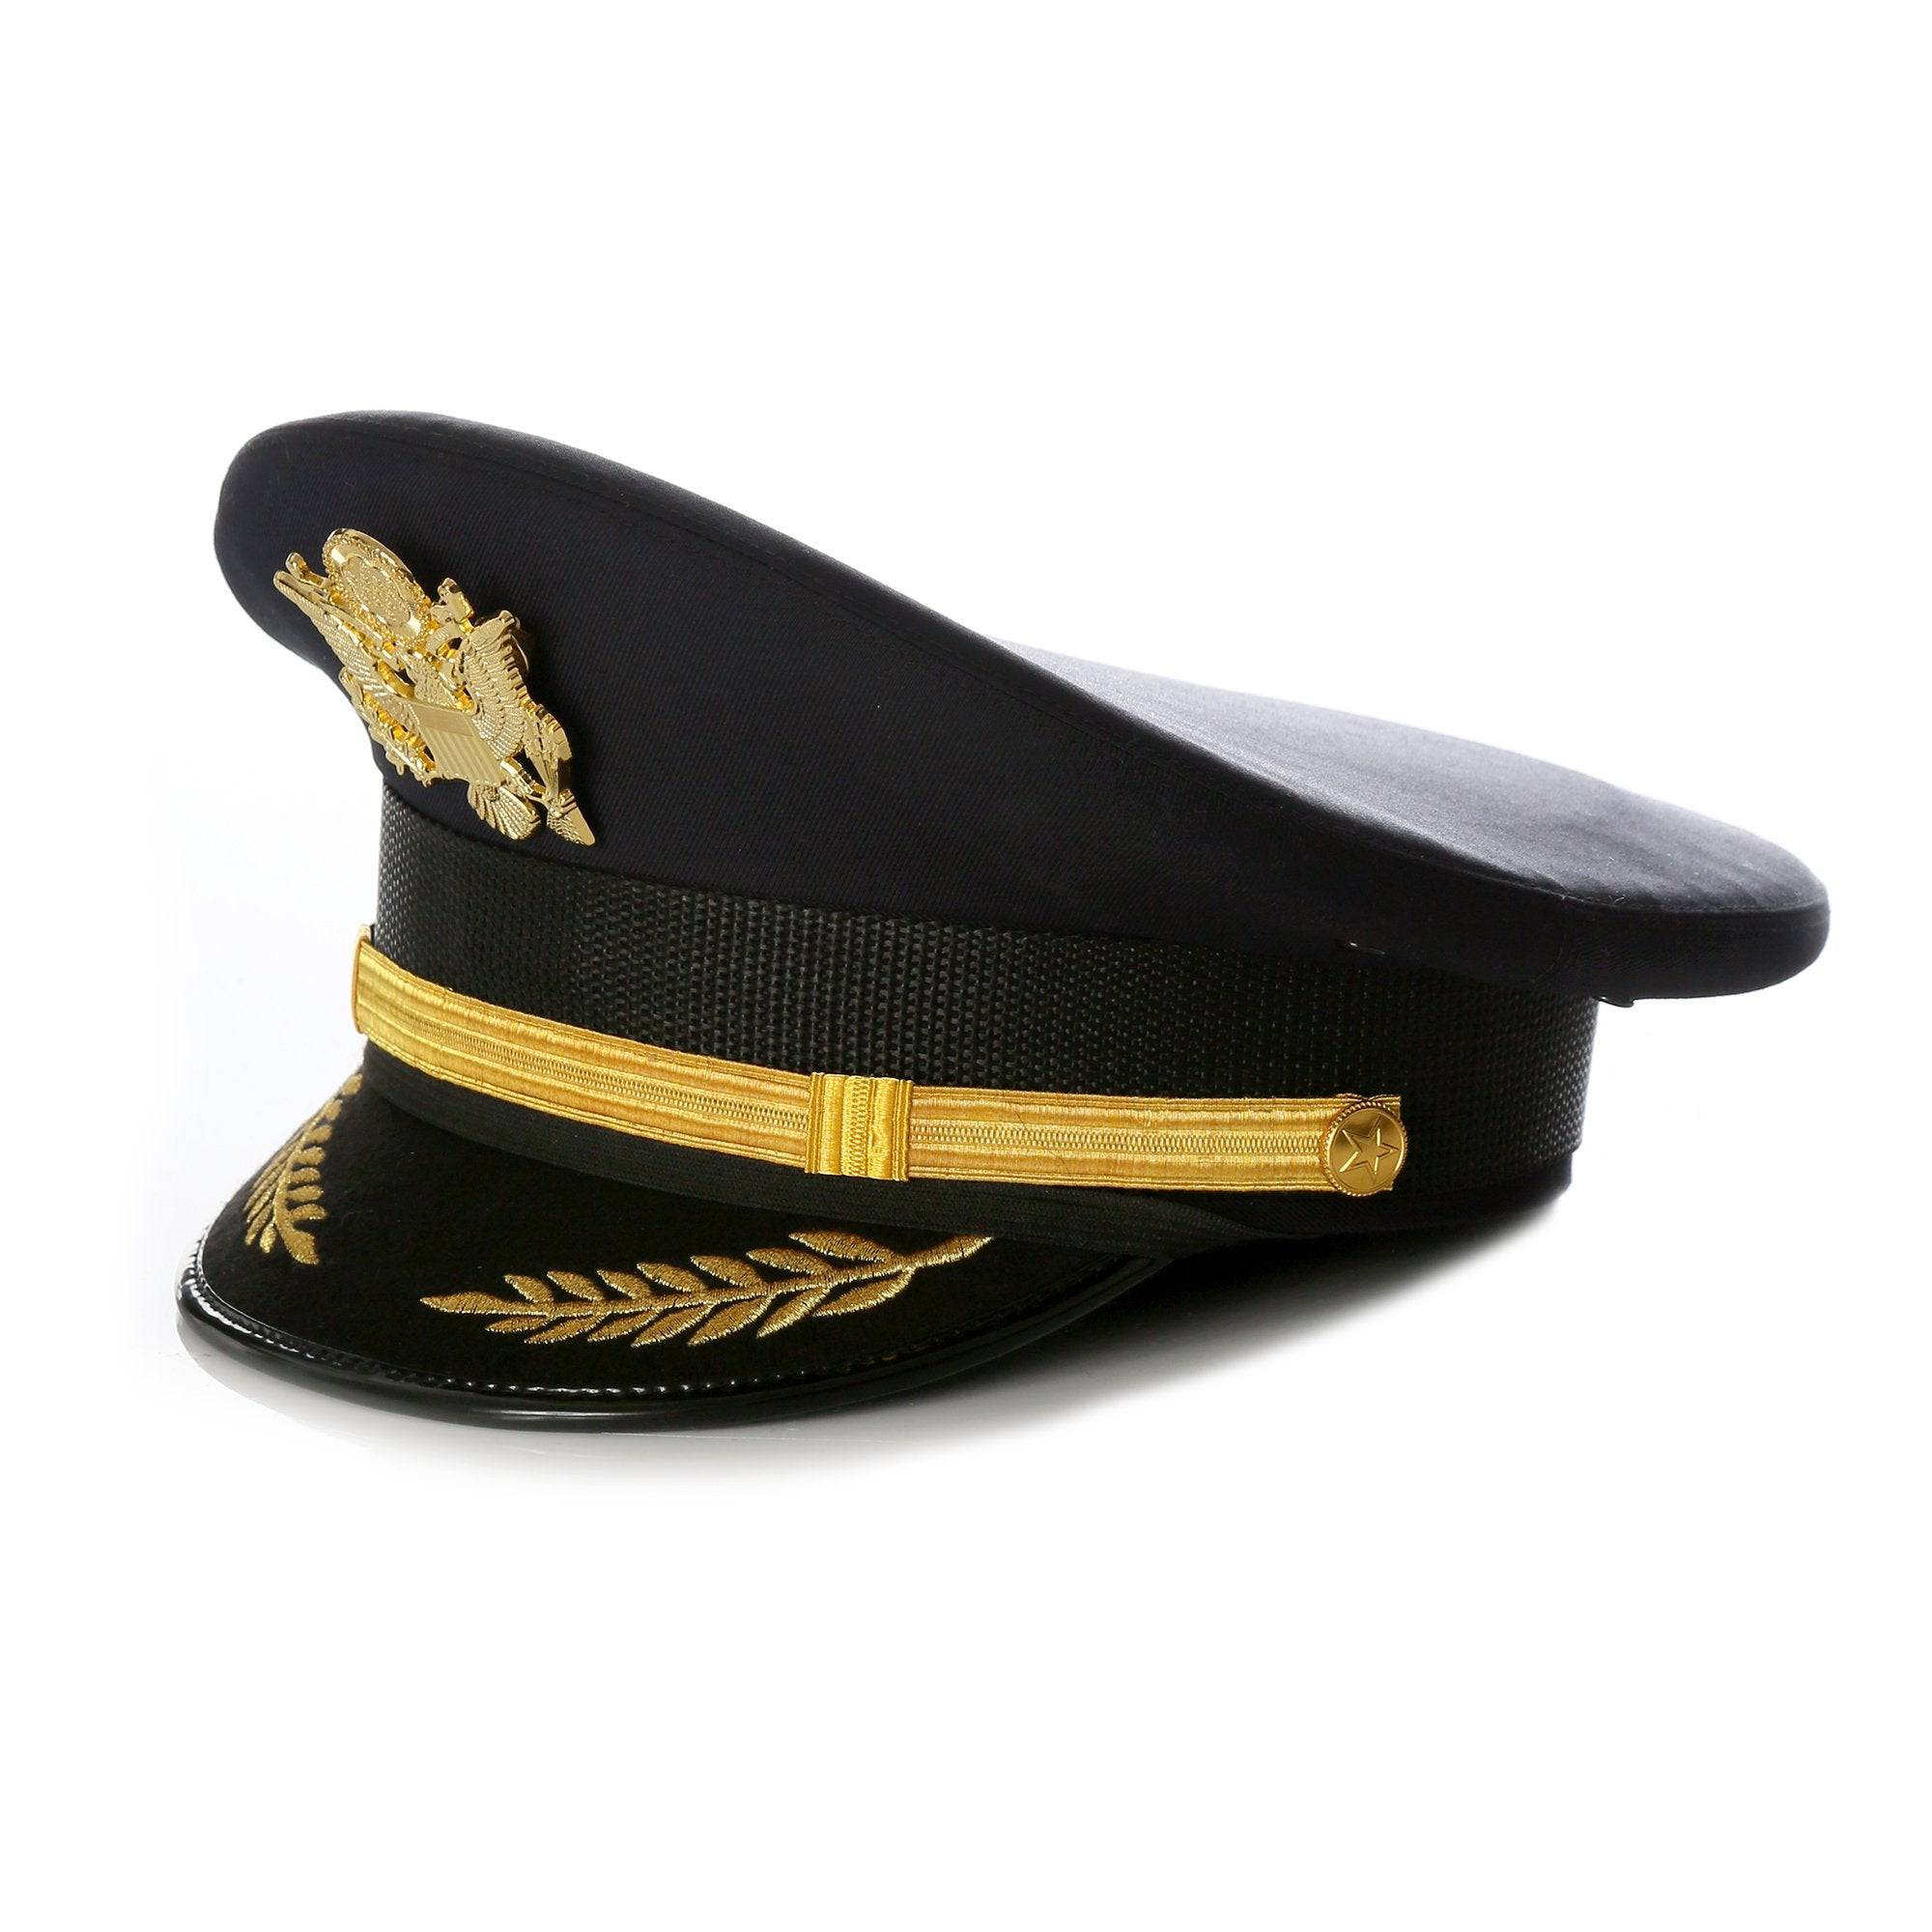 sea captain hat